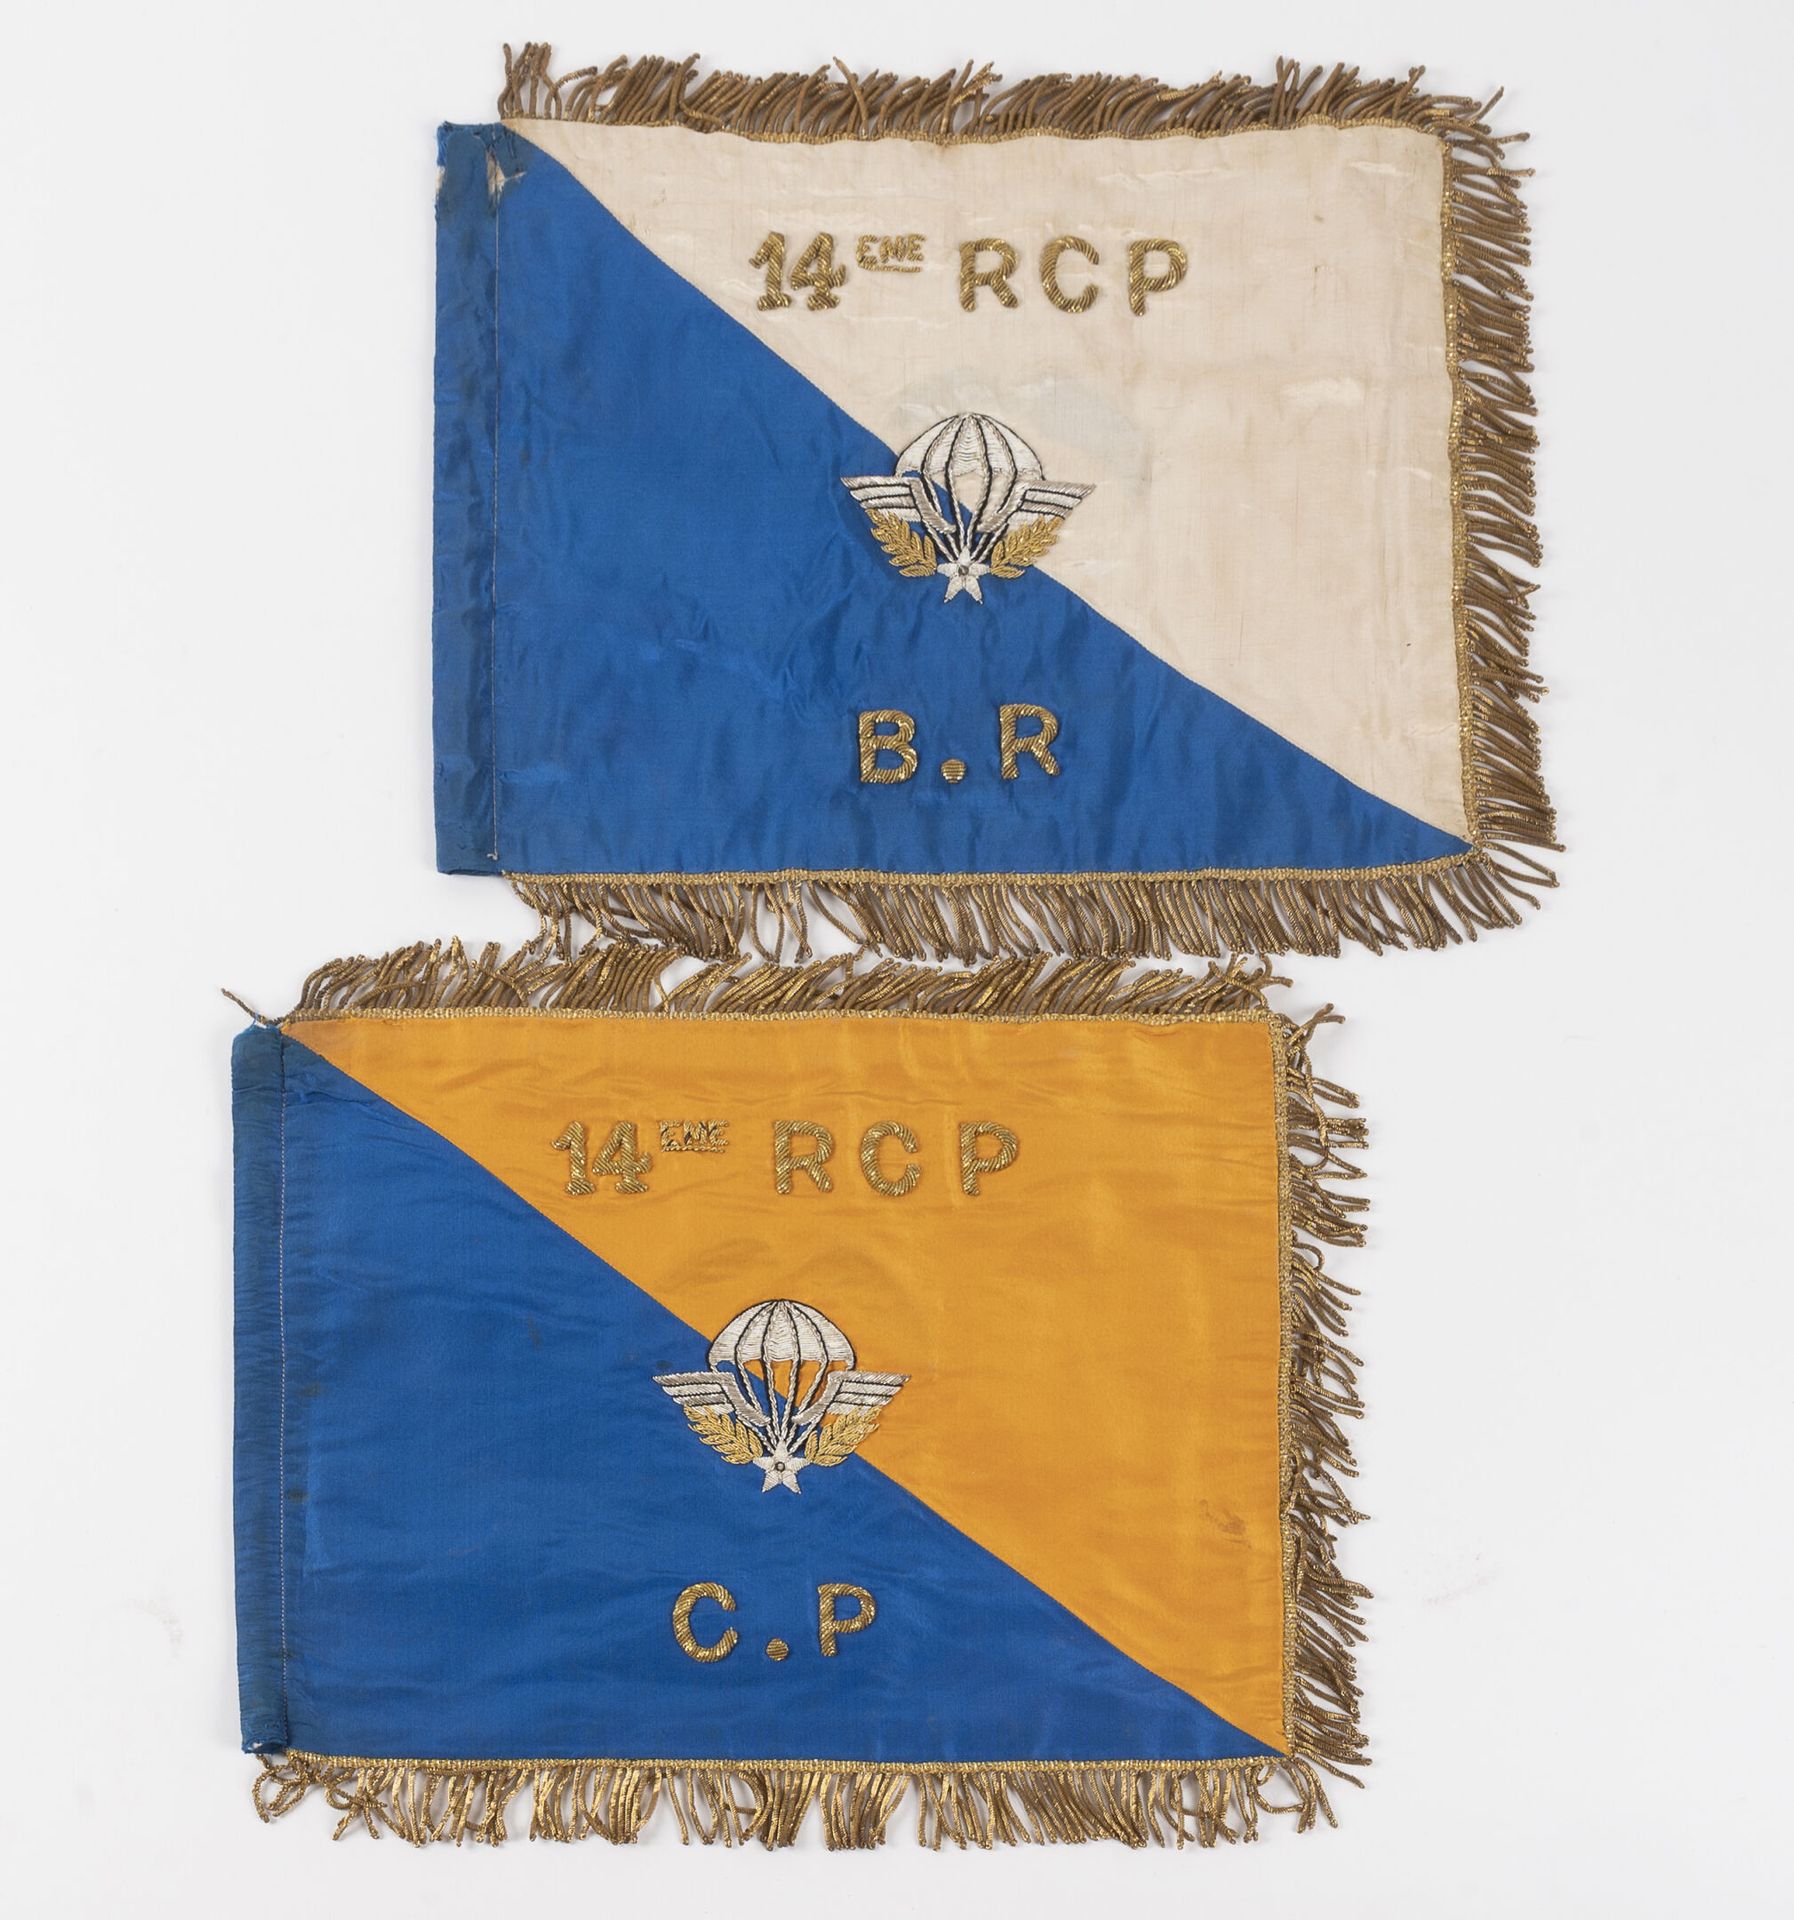 Null Juego de 2 banderines bordados del C.P. Y B.R. Del 14º R.C.P.

27 x 35 cm.